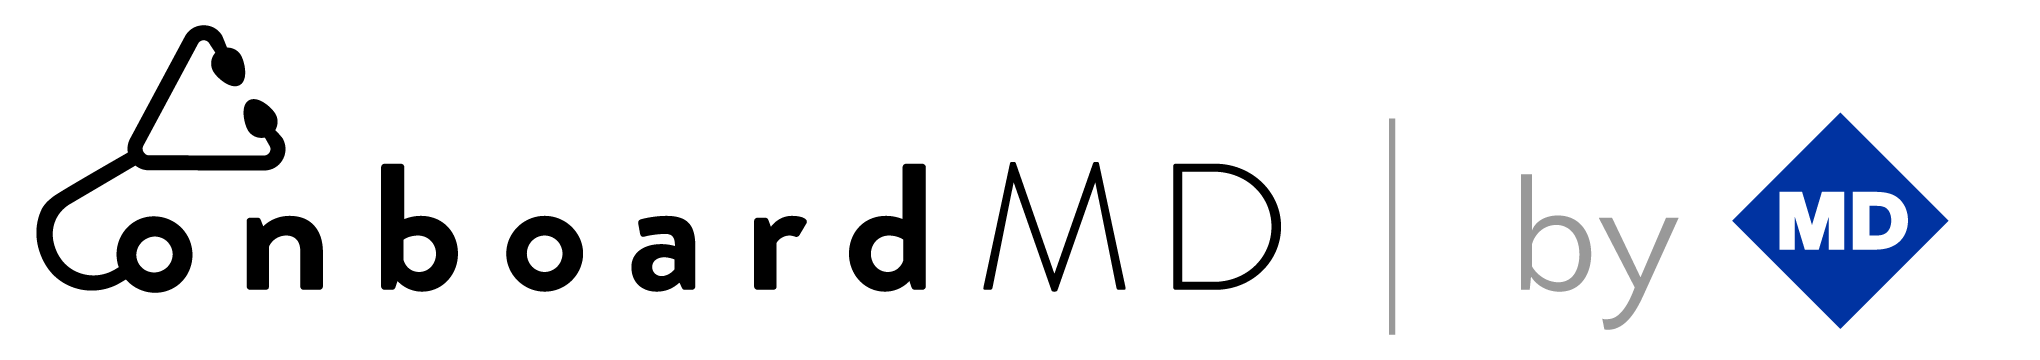 onboardMD logo